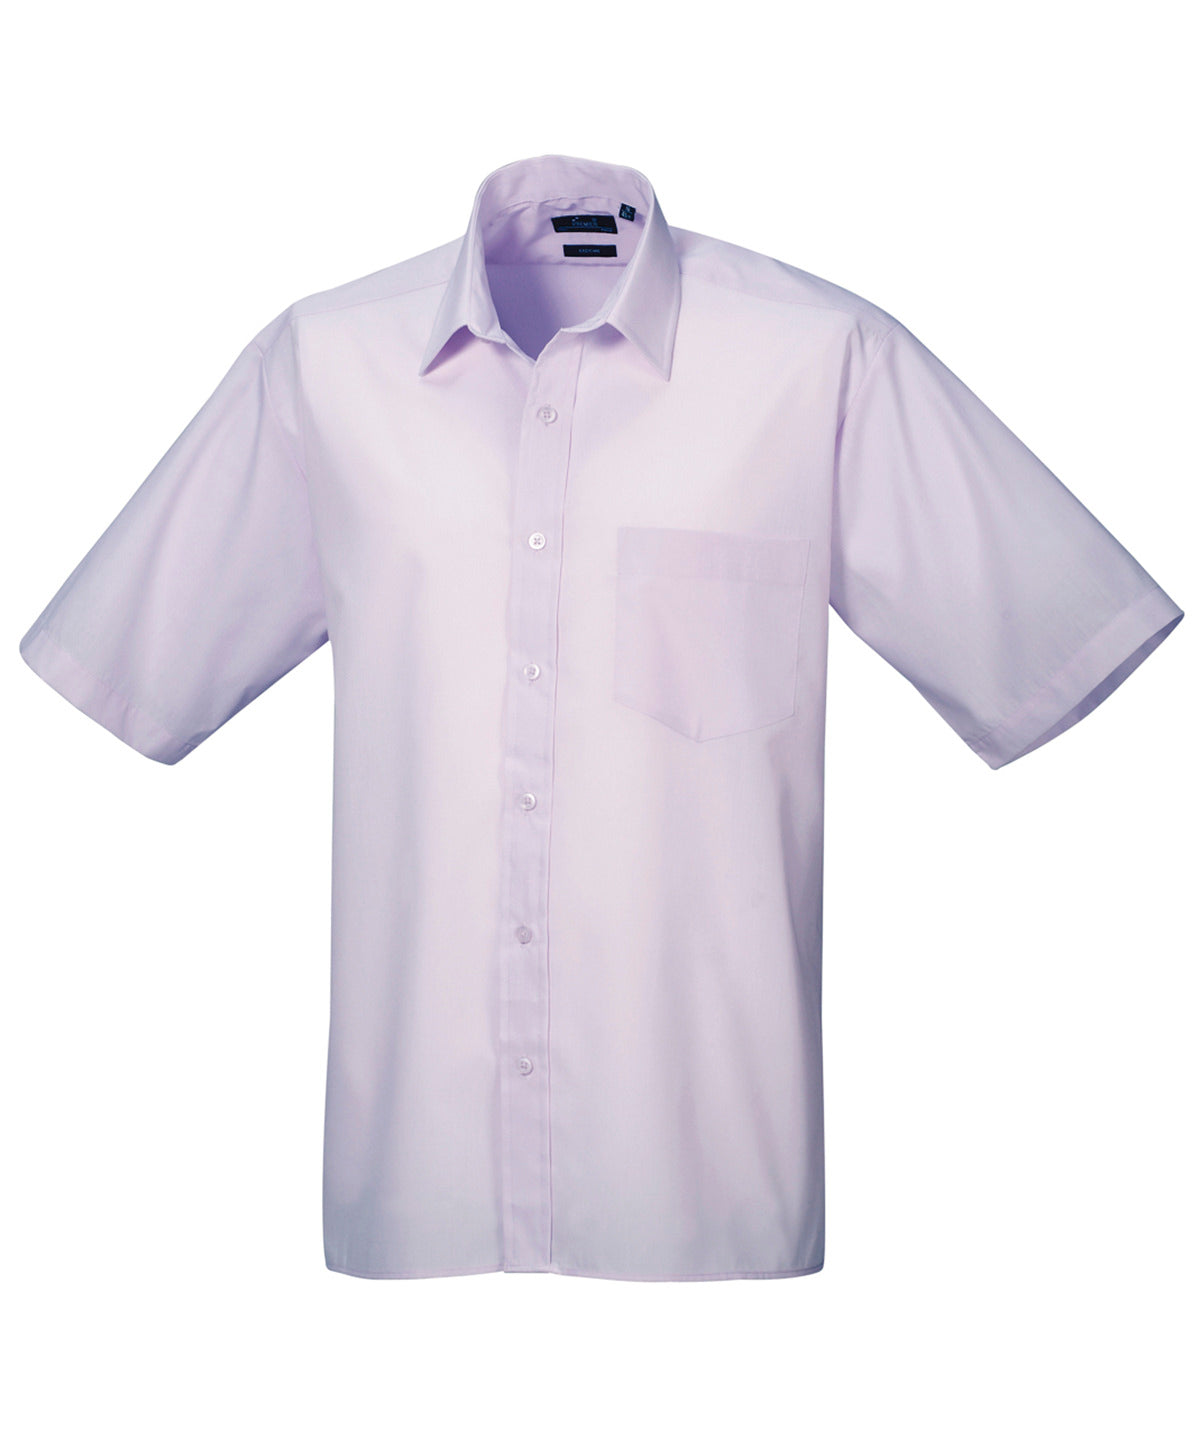 Bolir - Short Sleeve Poplin Shirt